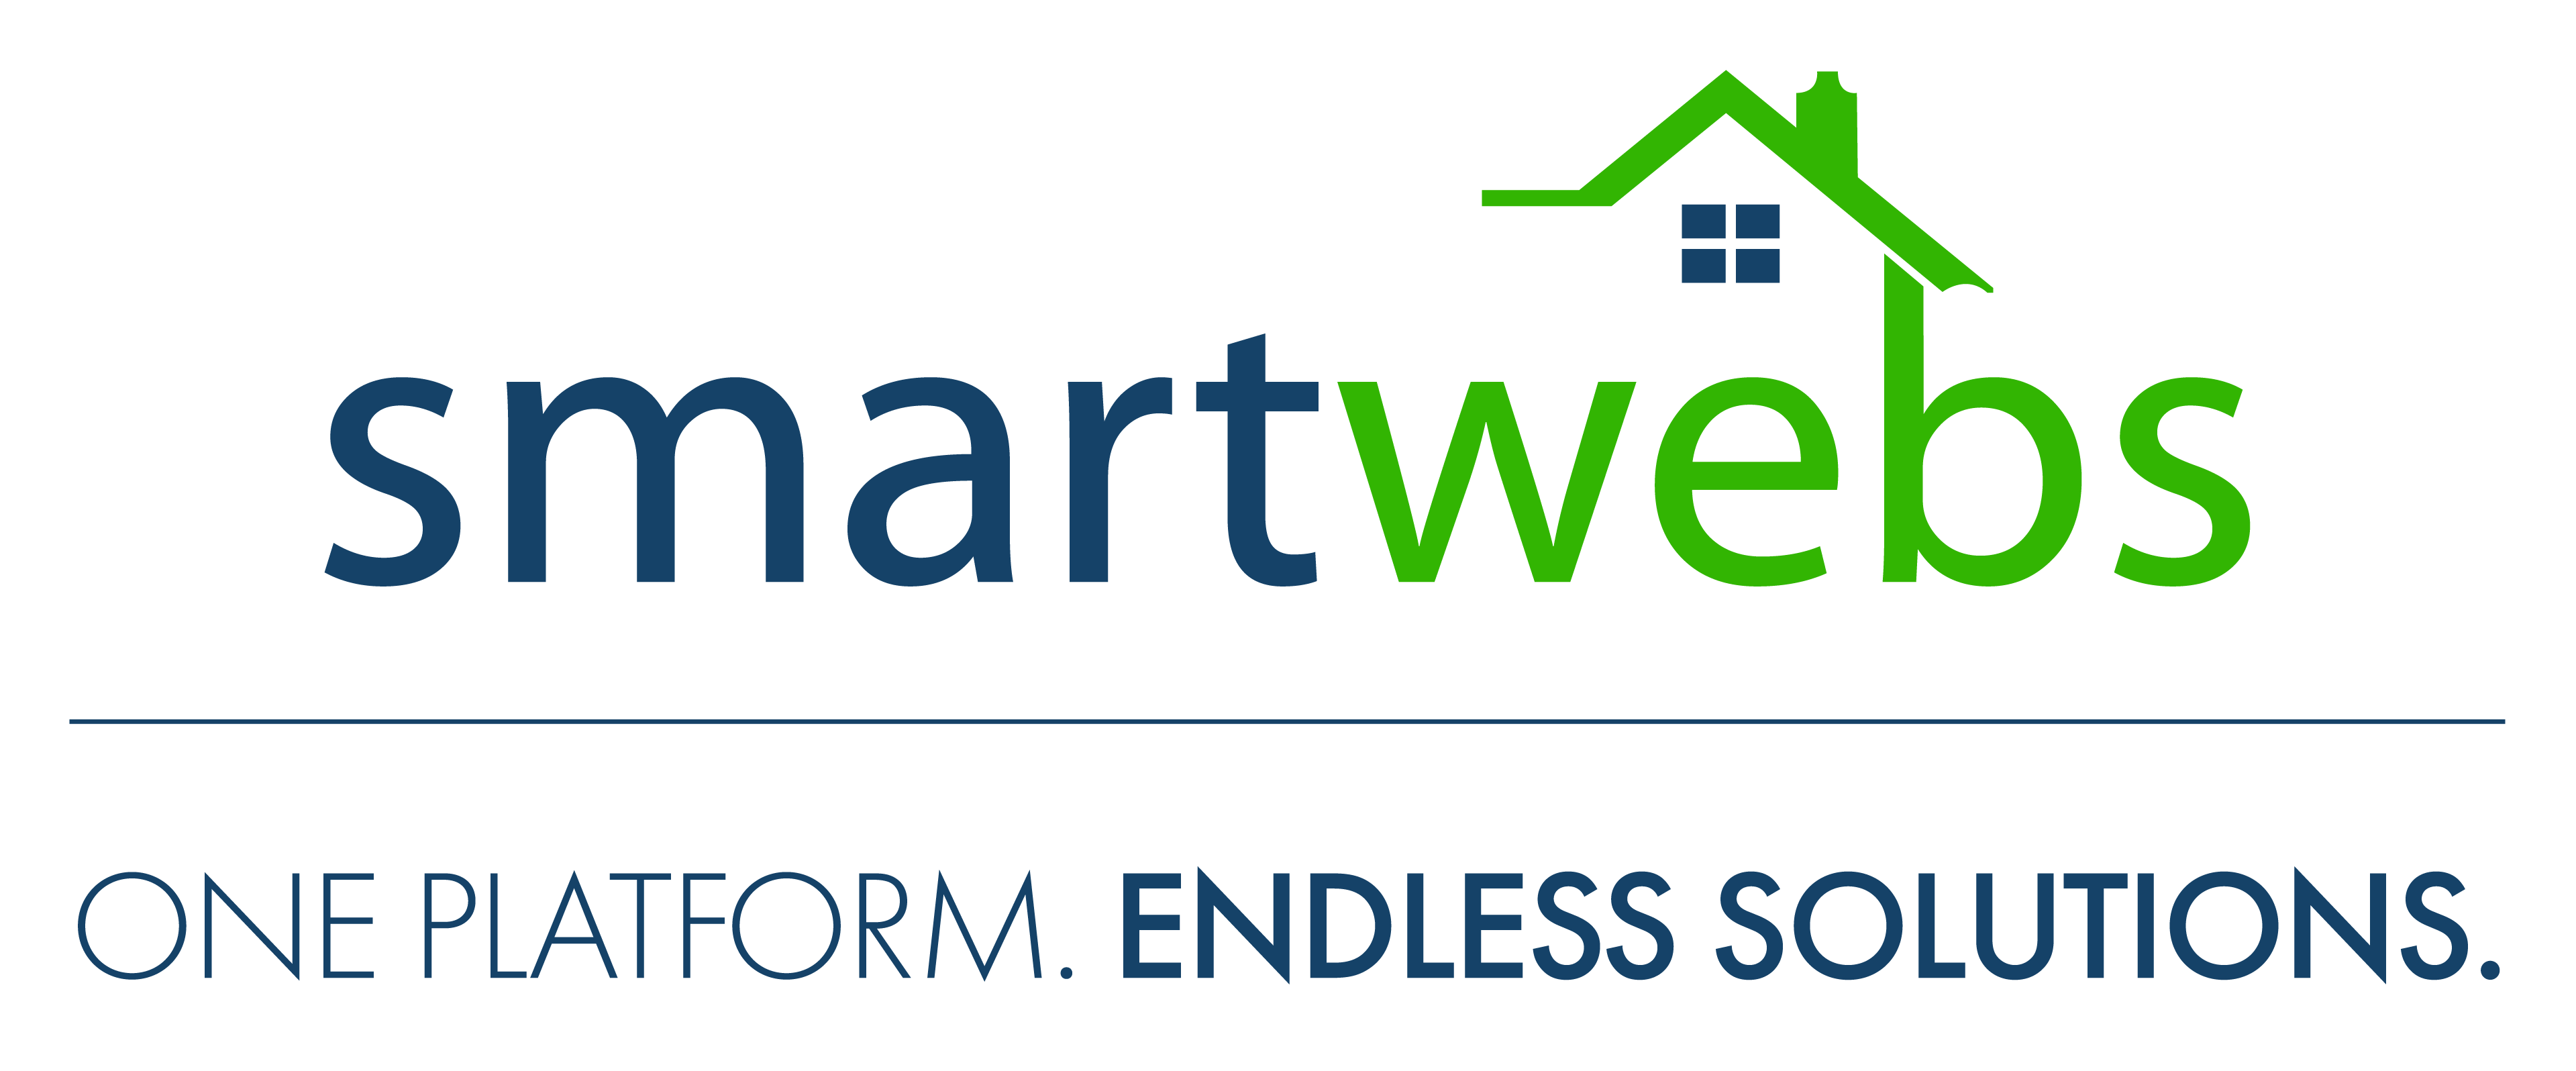 NEW-Smartwebs-Logos_Smartwebs-FullColor (1).png